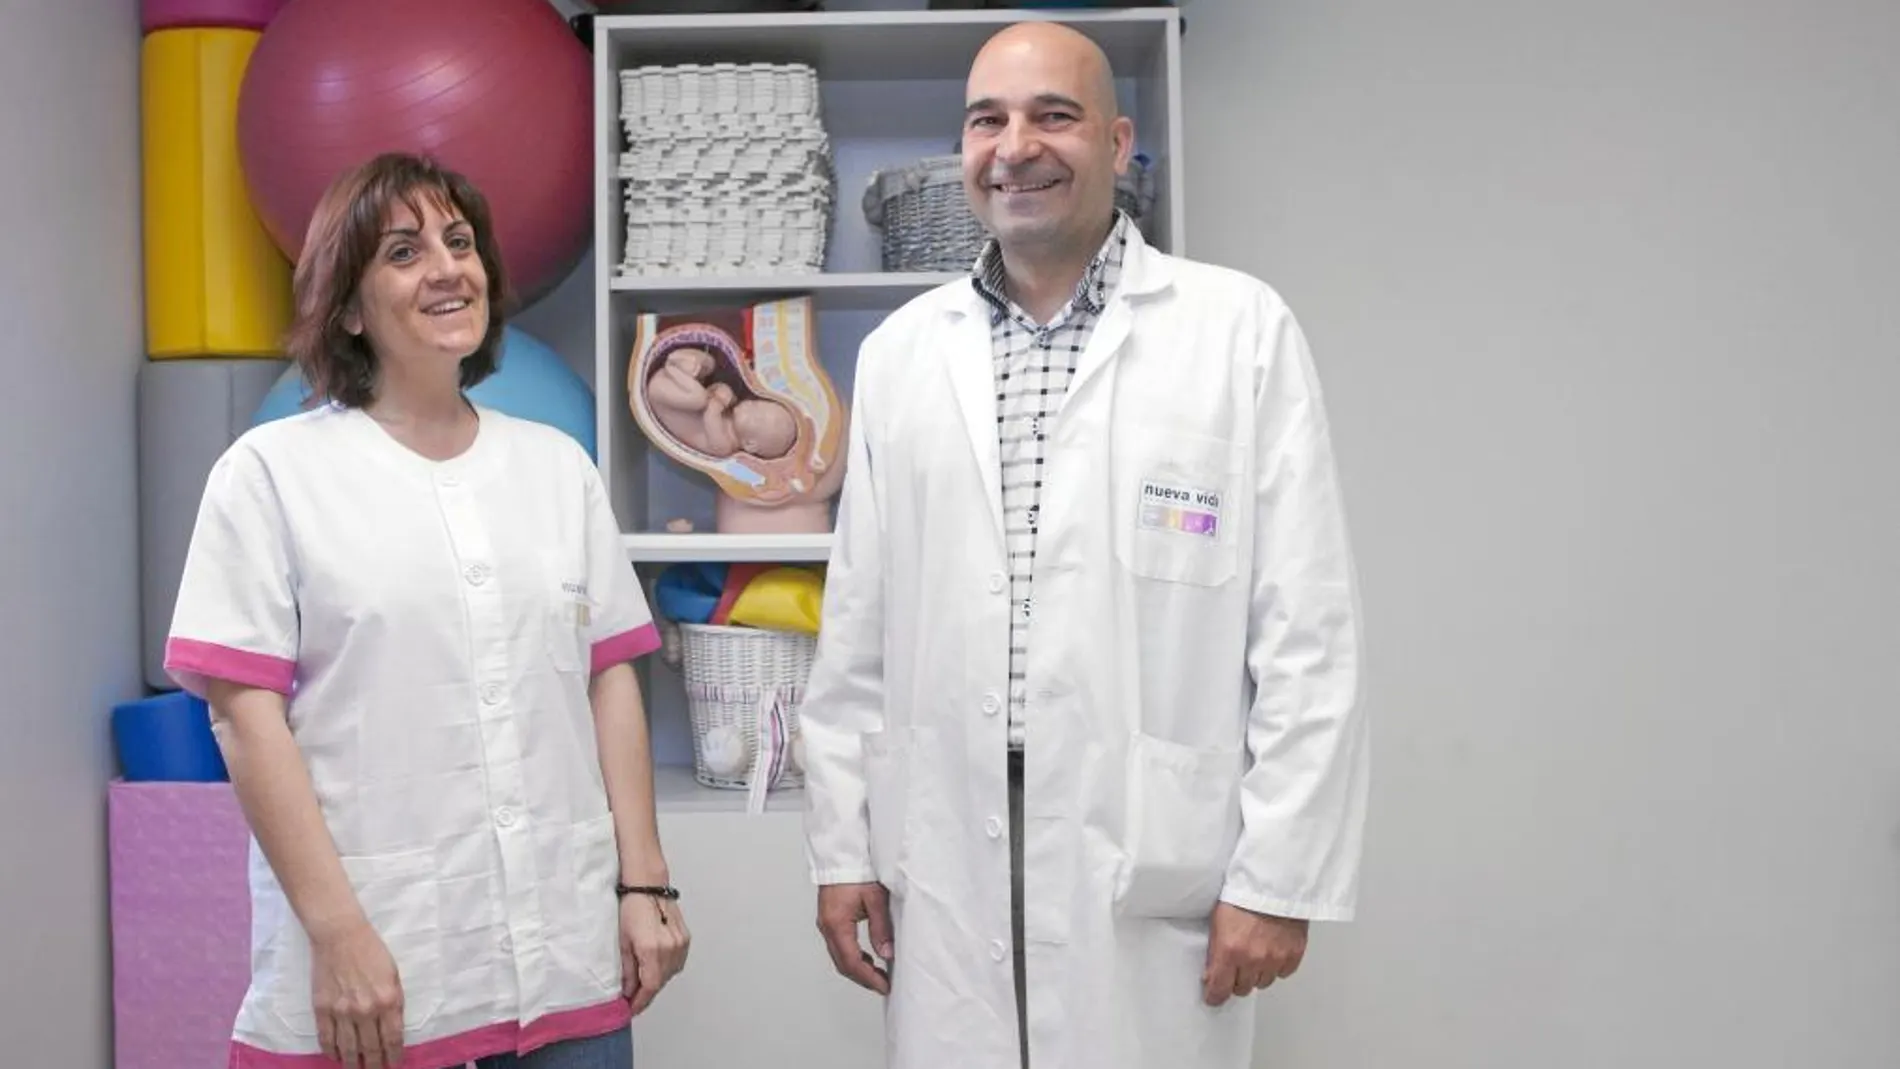 «Nueva vida», primer centro médico privado de este tipo en Burgos, amplía servicios con la nueva técnica de la diatermia